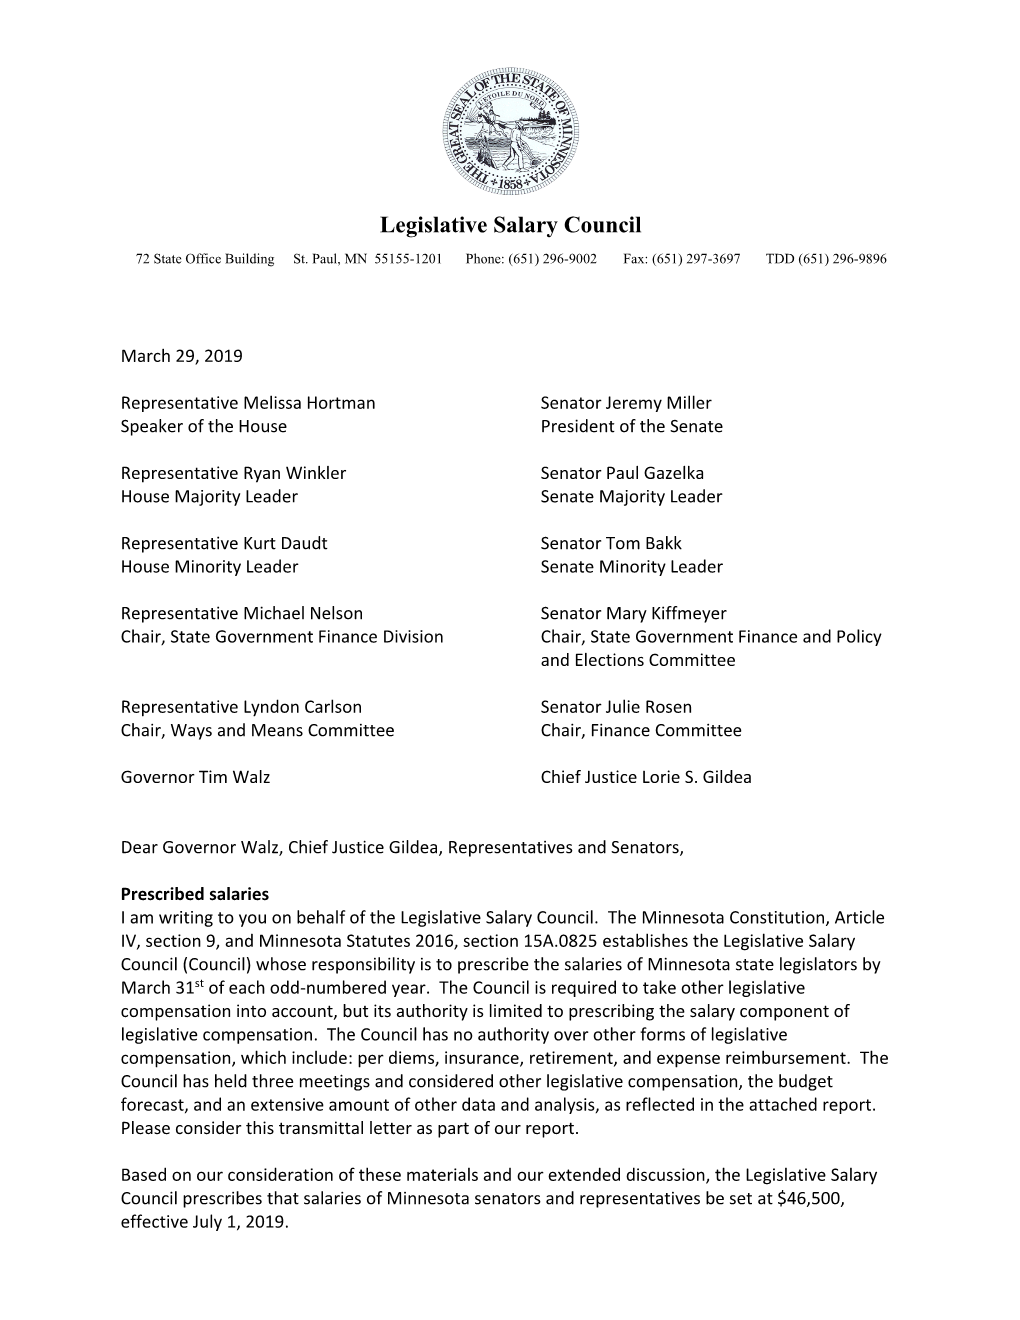 Legislative Salary Council Report March 29, 2019